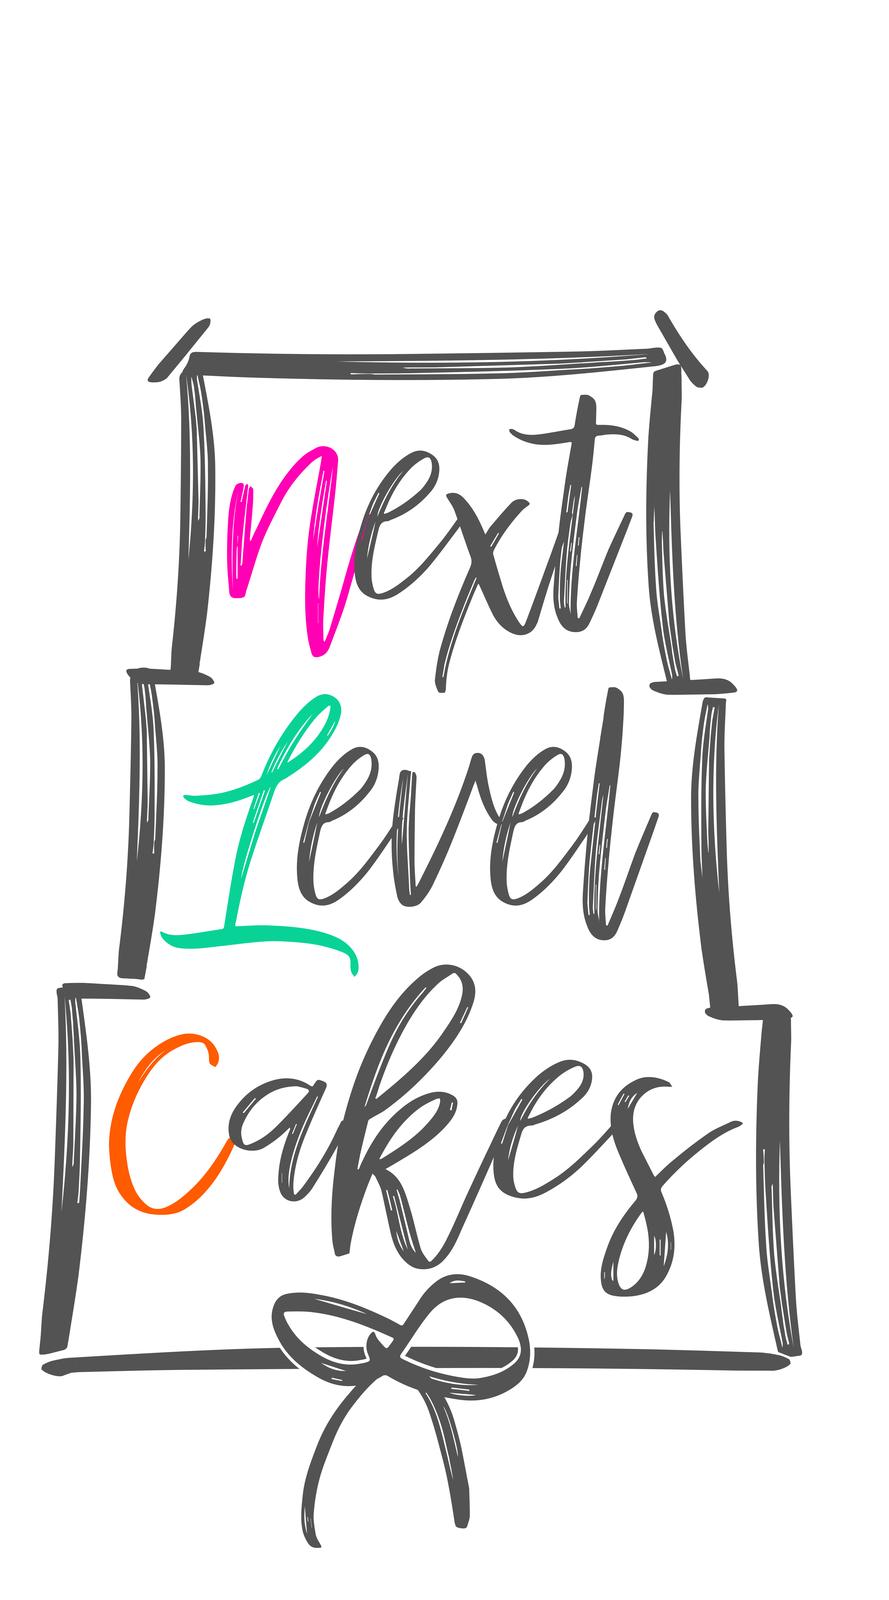 Next Level Cakes